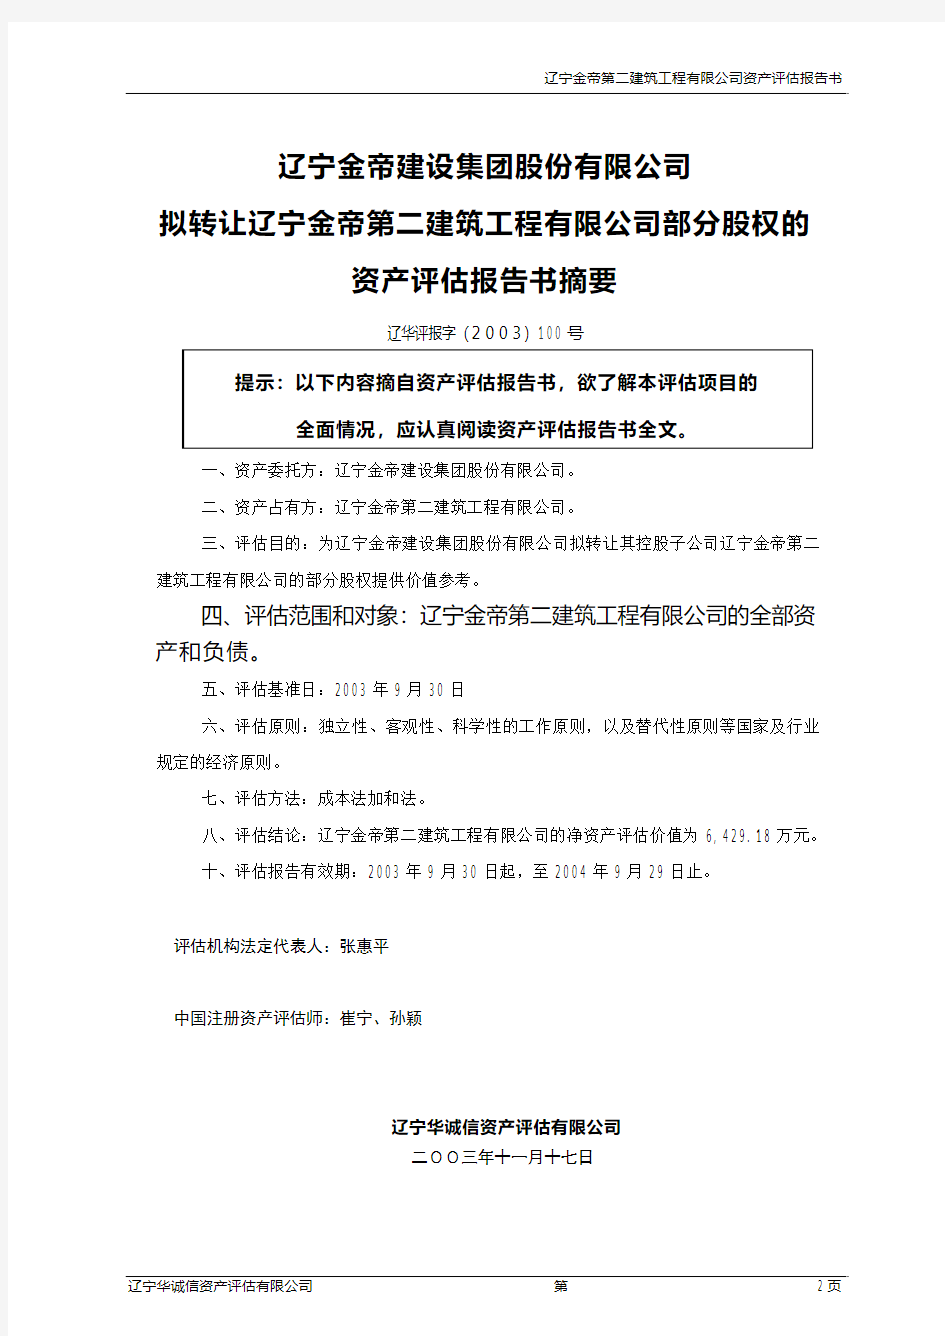 辽宁某筑工程公司资产评估报告书(pdf 12页)